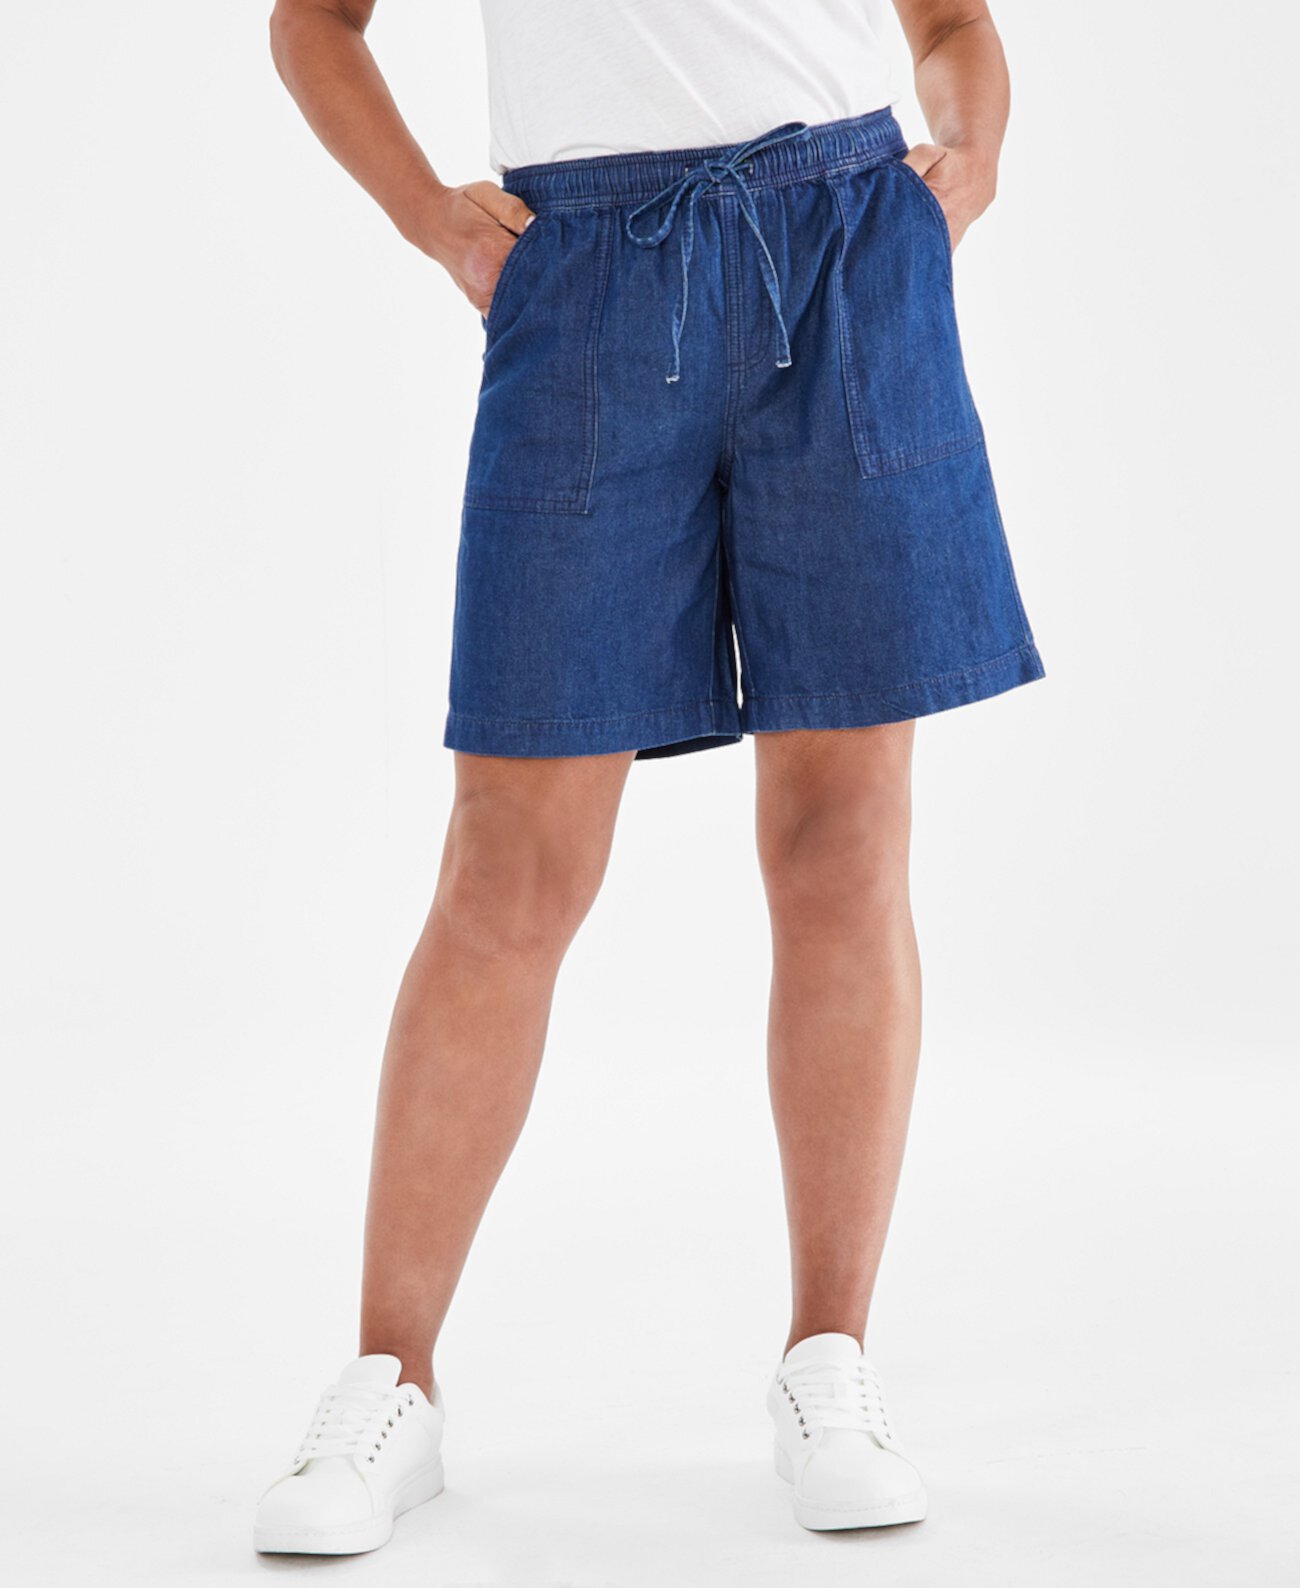 Женские шорты без застежки из шамбре, стандартного и миниатюрного размера, созданные для Macy's Style & Co